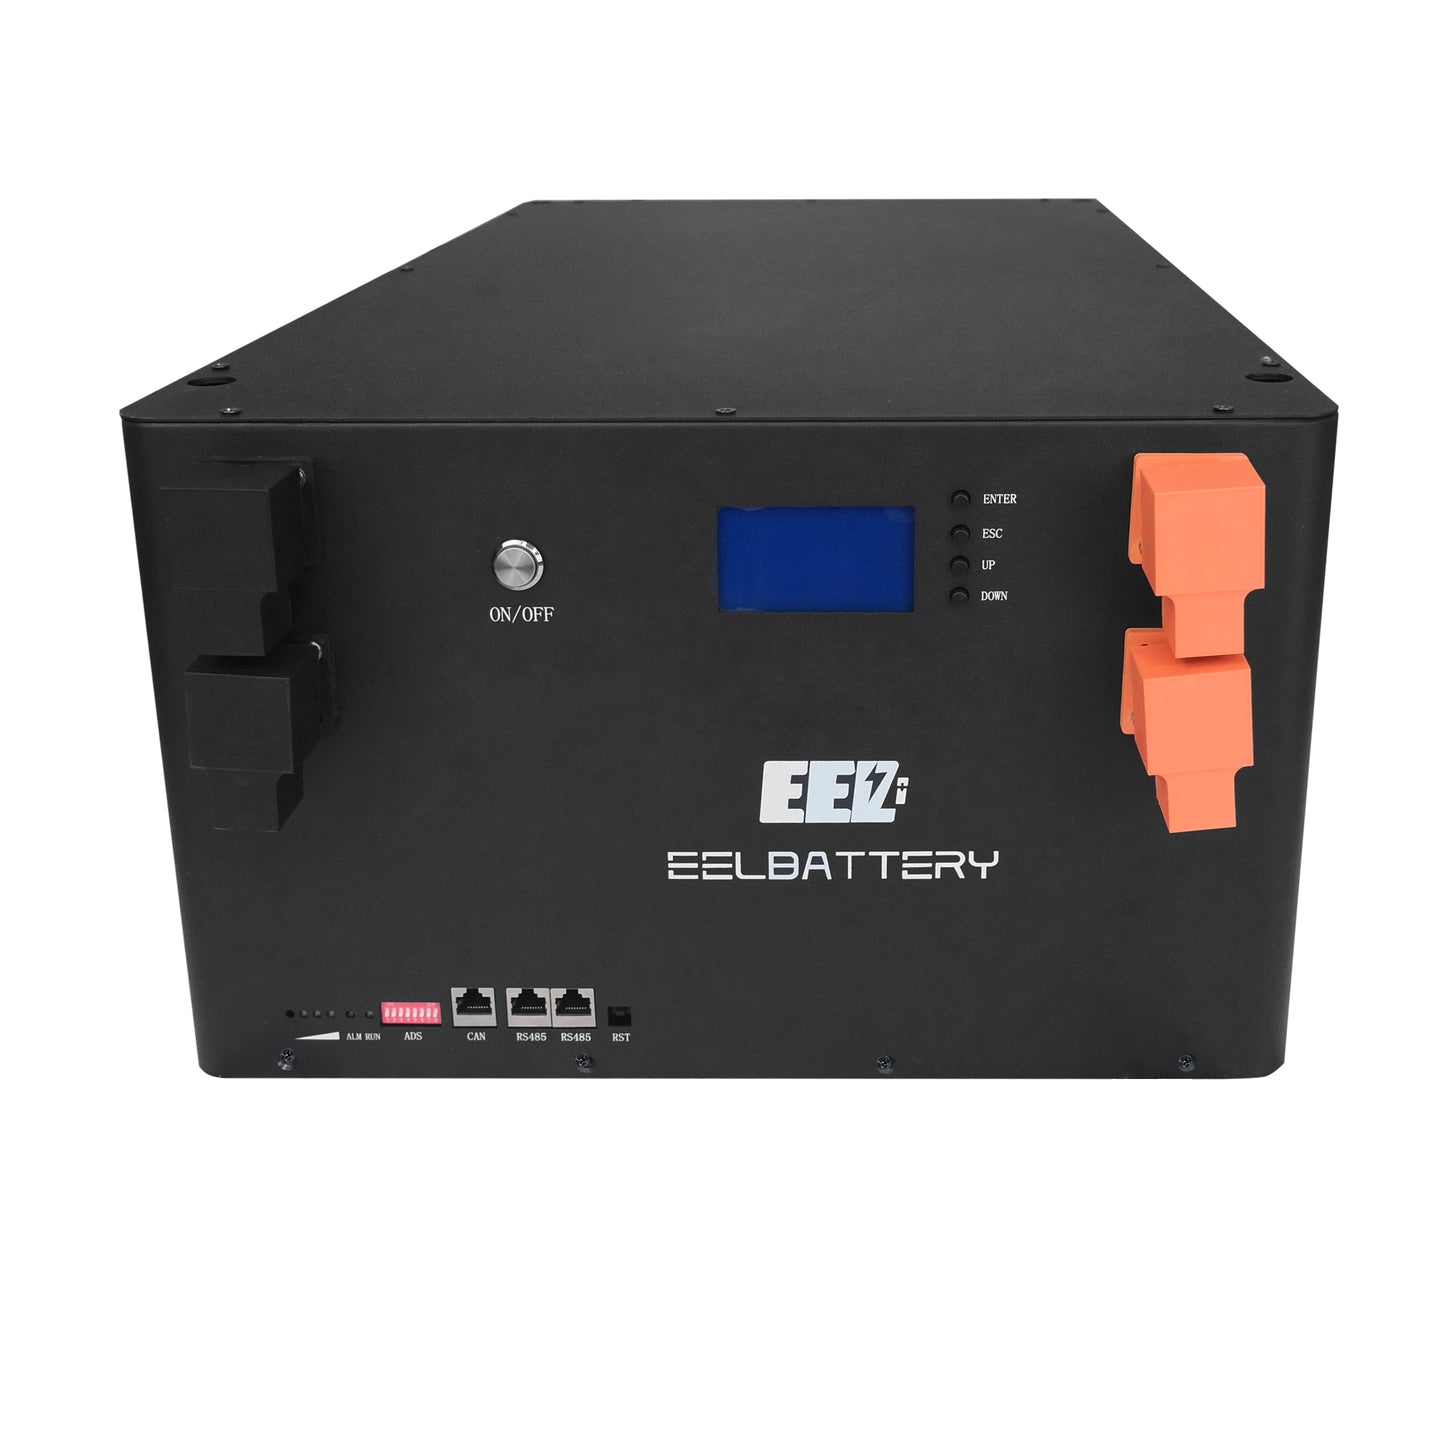 EEL V3 48V 16S Server Rack Battery DIY Unit 280 BOX 51.2V Stackable Type without Active Balancer